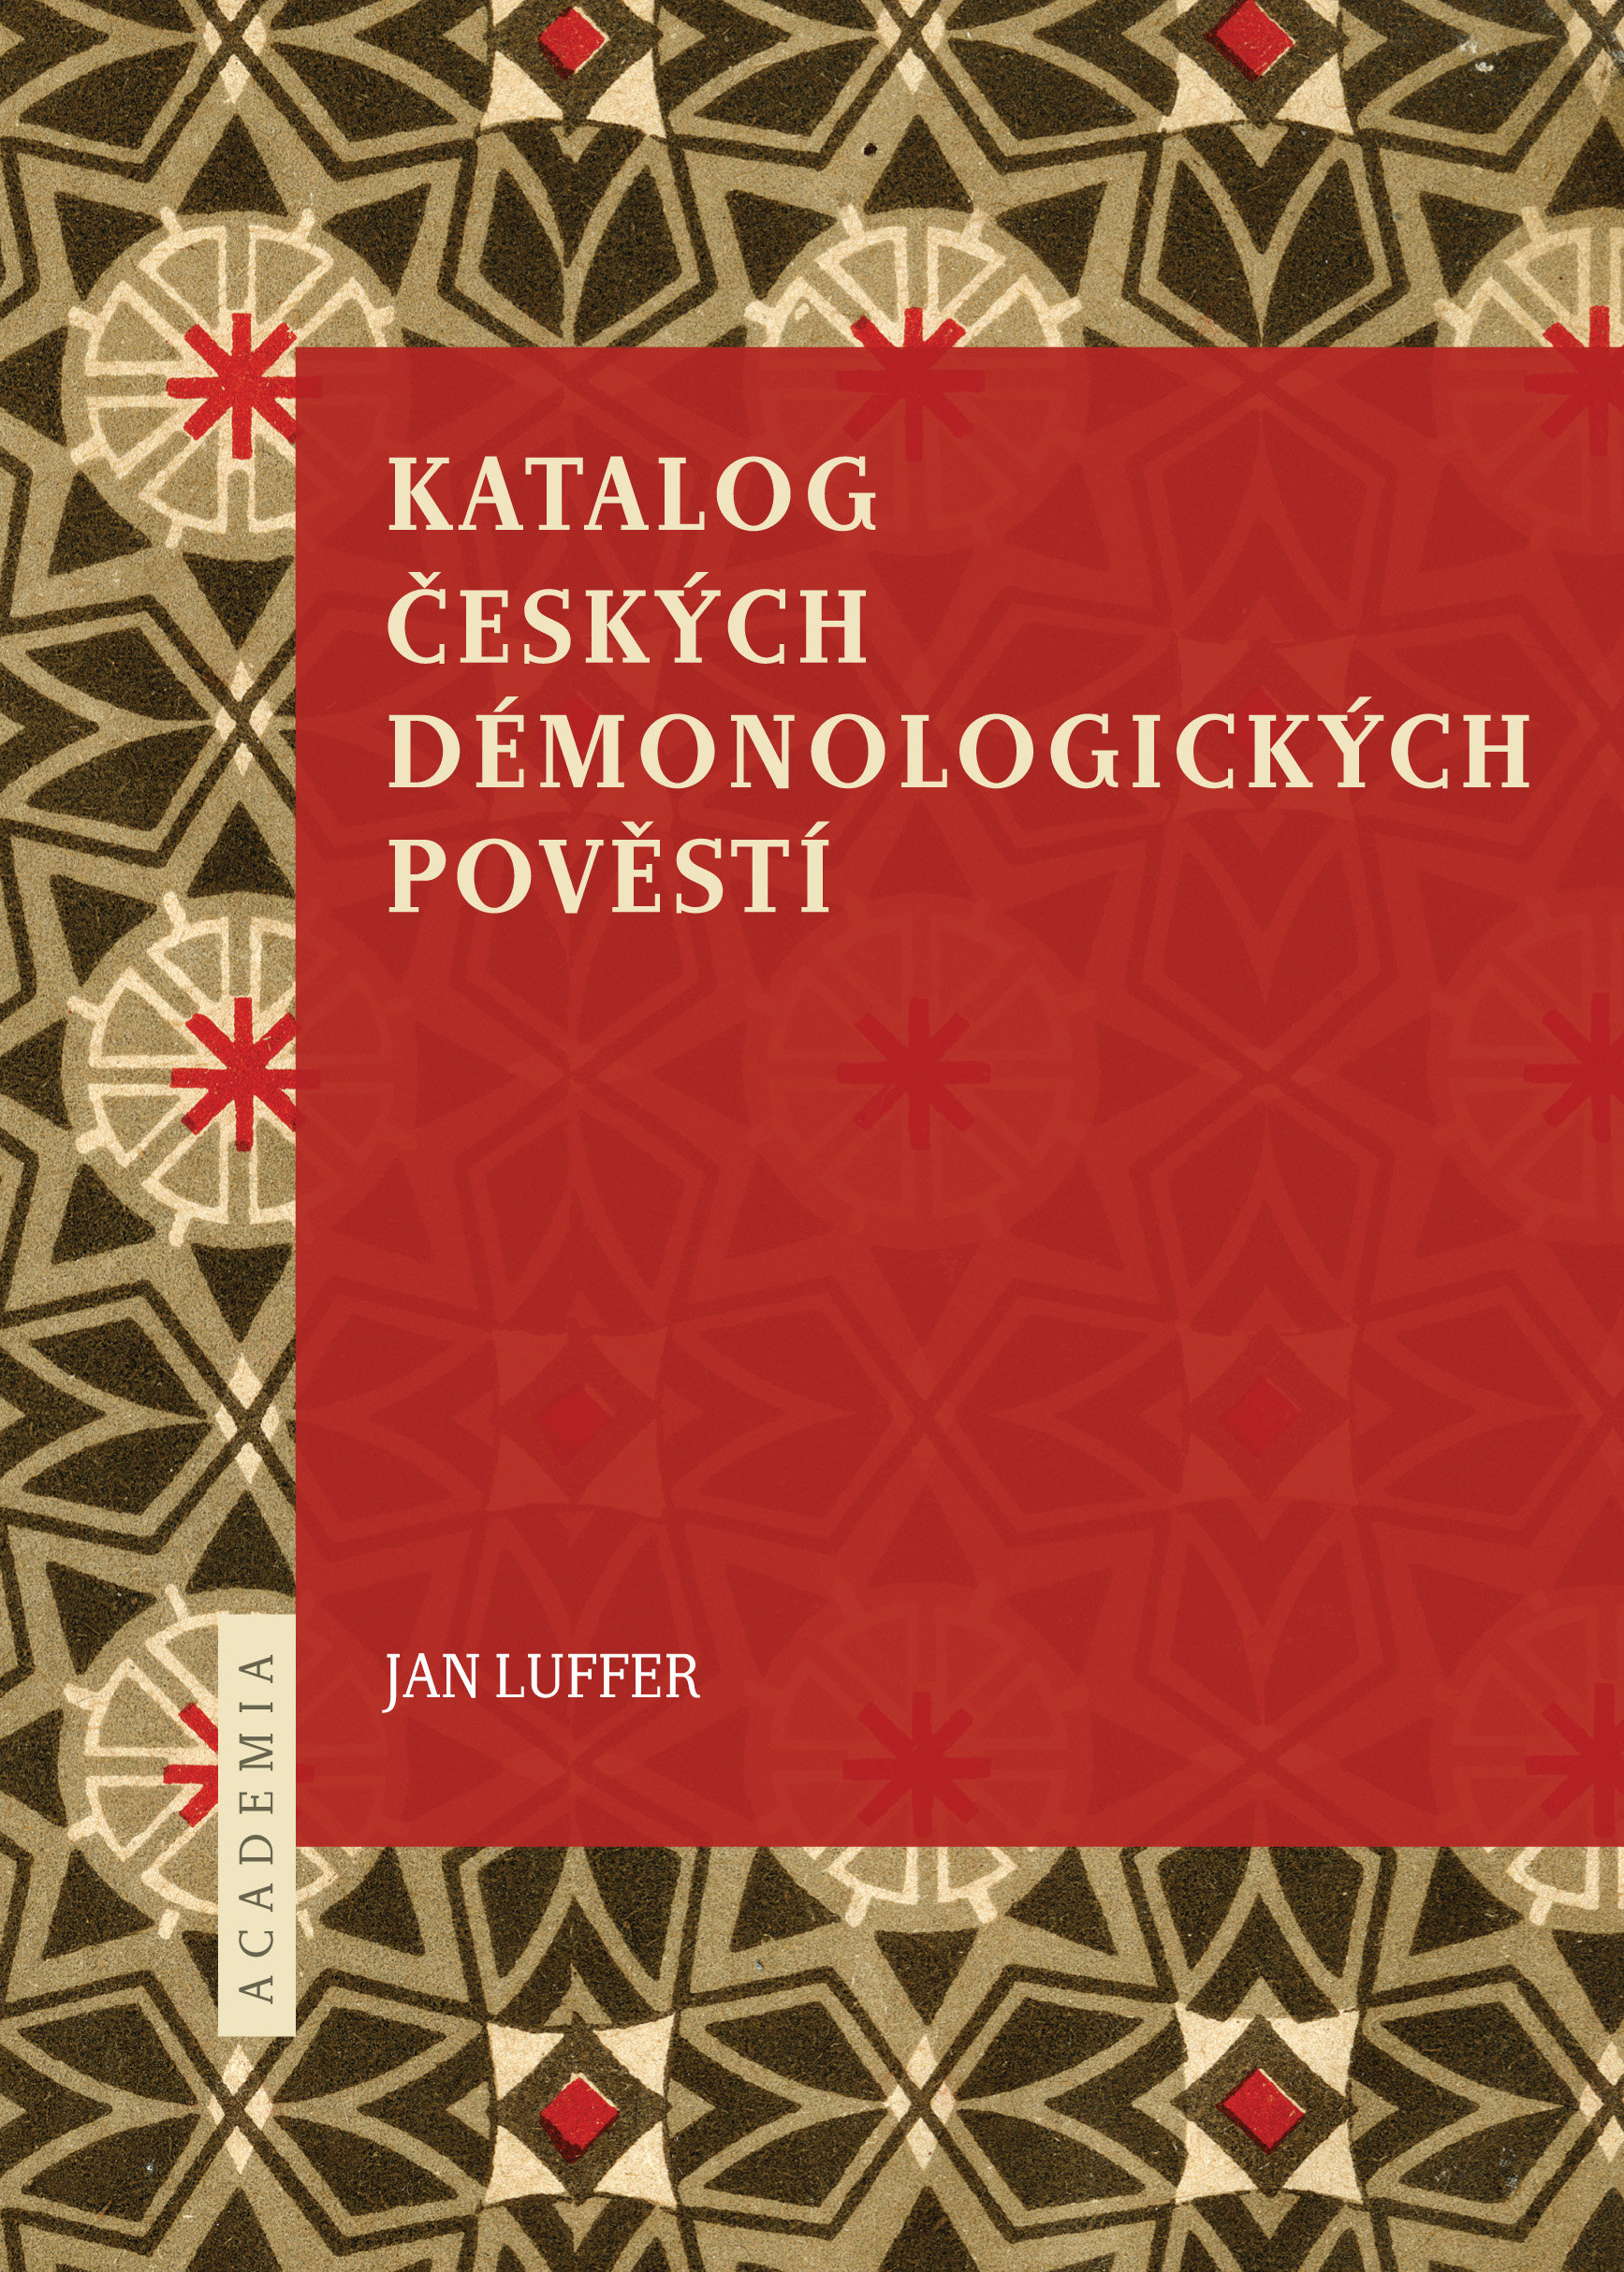 Jan Luffer: Katalog českých démonologických pověstí (Academia, Praha 2014)